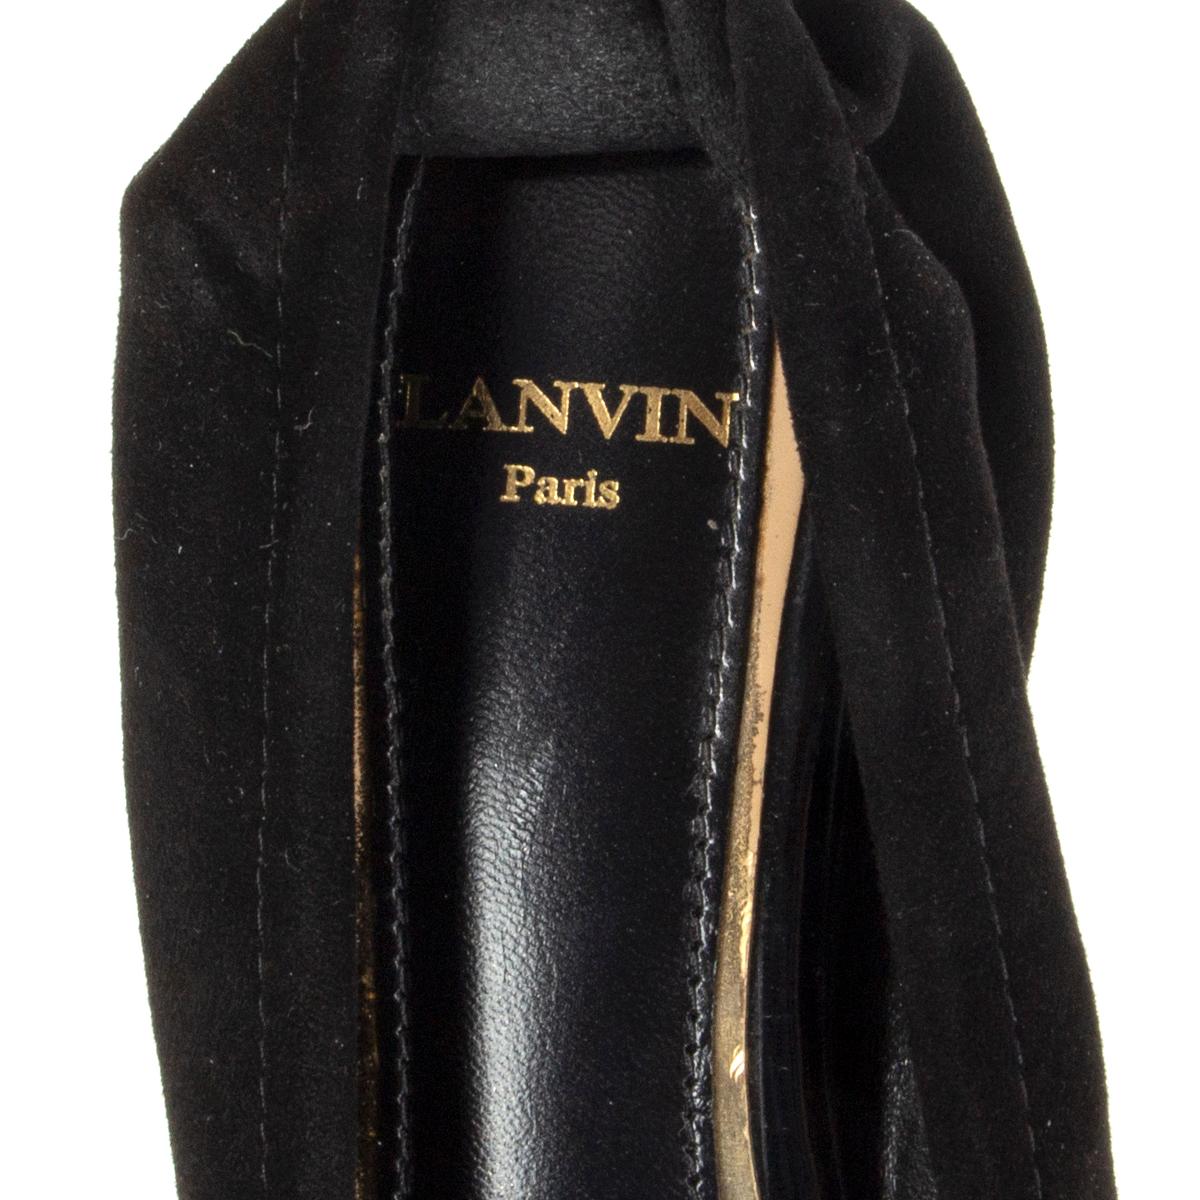 LANVIN black suede CRYSTAL EMBELLISHED Ballet Flats Shoes 37 For Sale 1